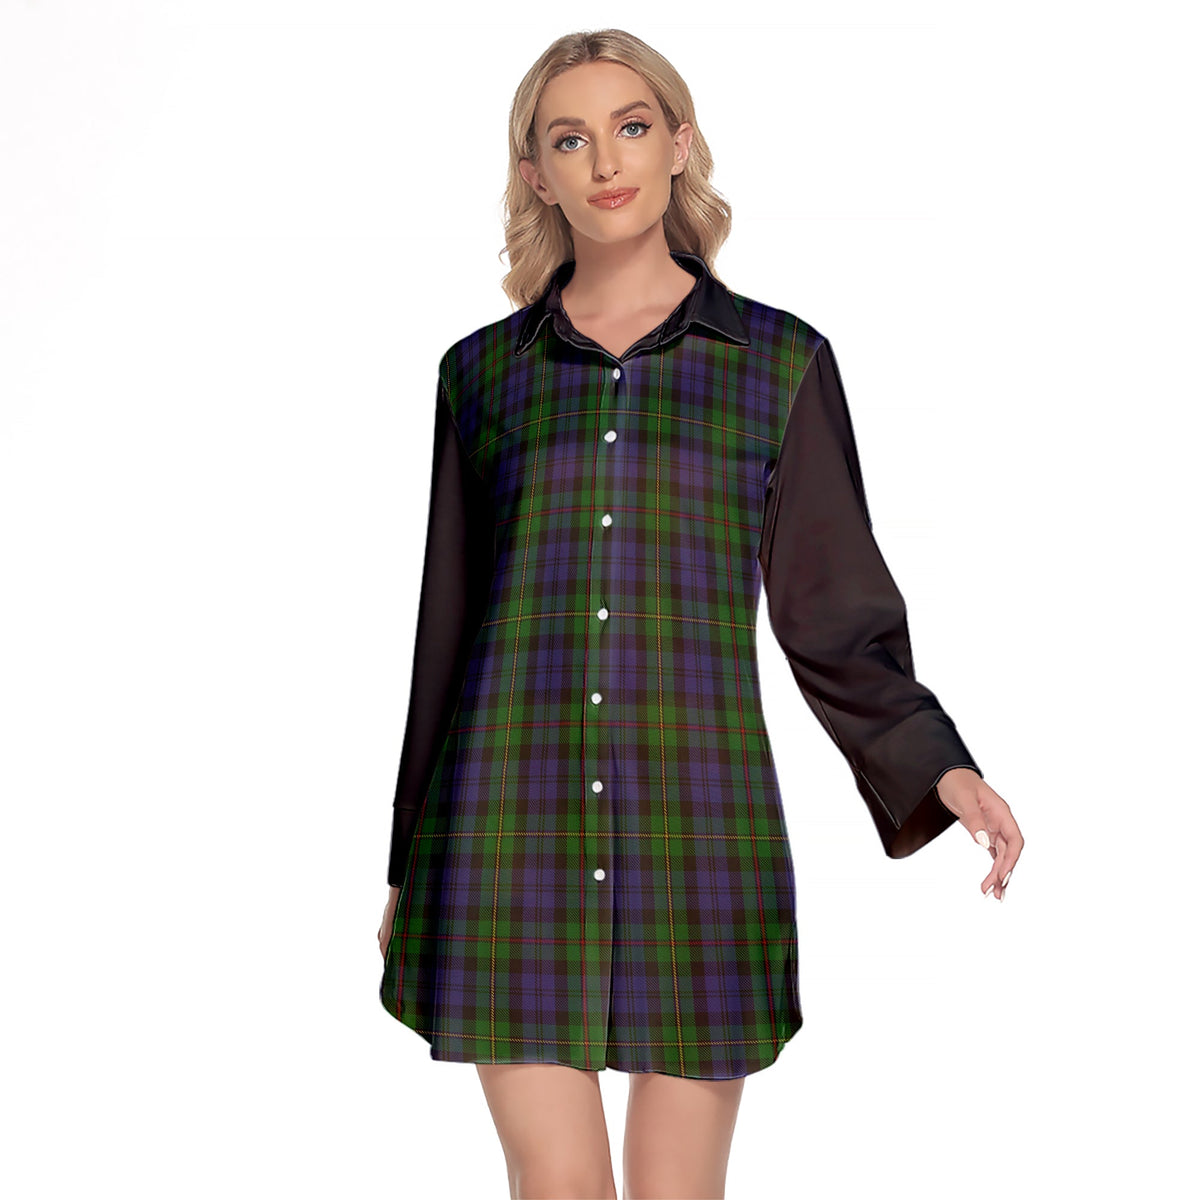 MacEwen - MacEwan Tartan Women's Lapel Shirt Dress With Long Sleeve